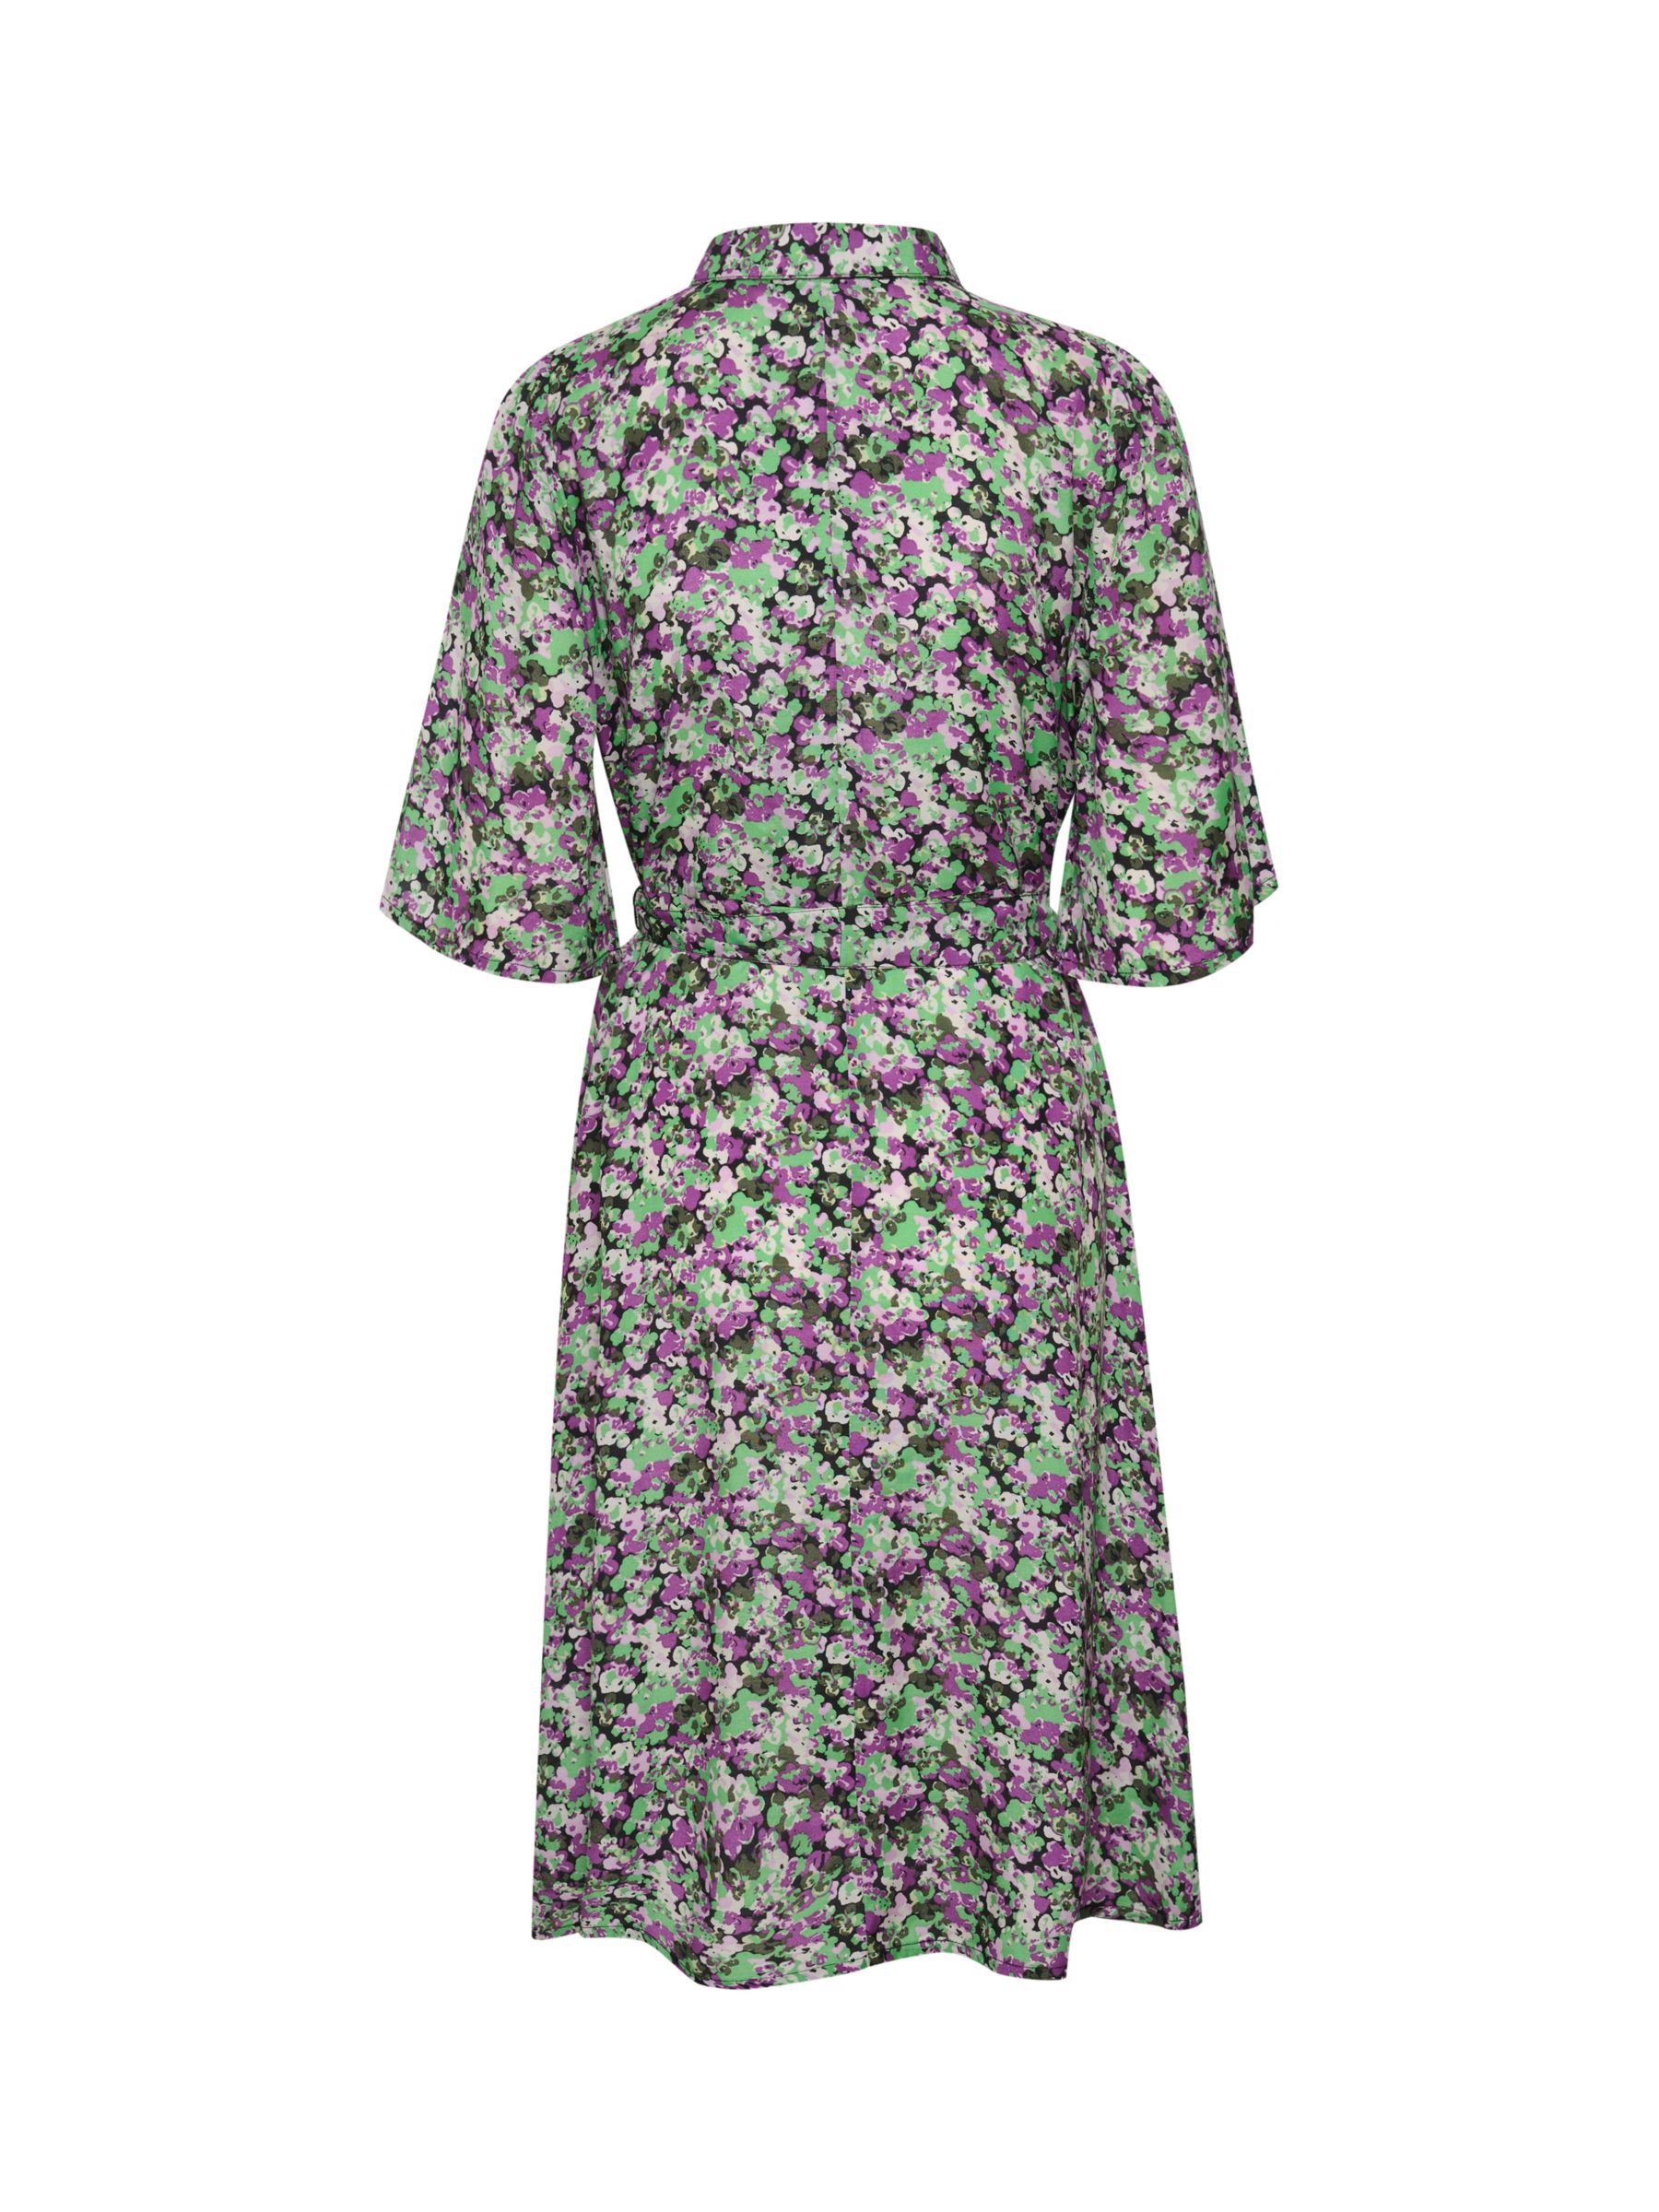 KAFFE Safir Knee Length Shirt Dress, Green/Purple at John Lewis & Partners